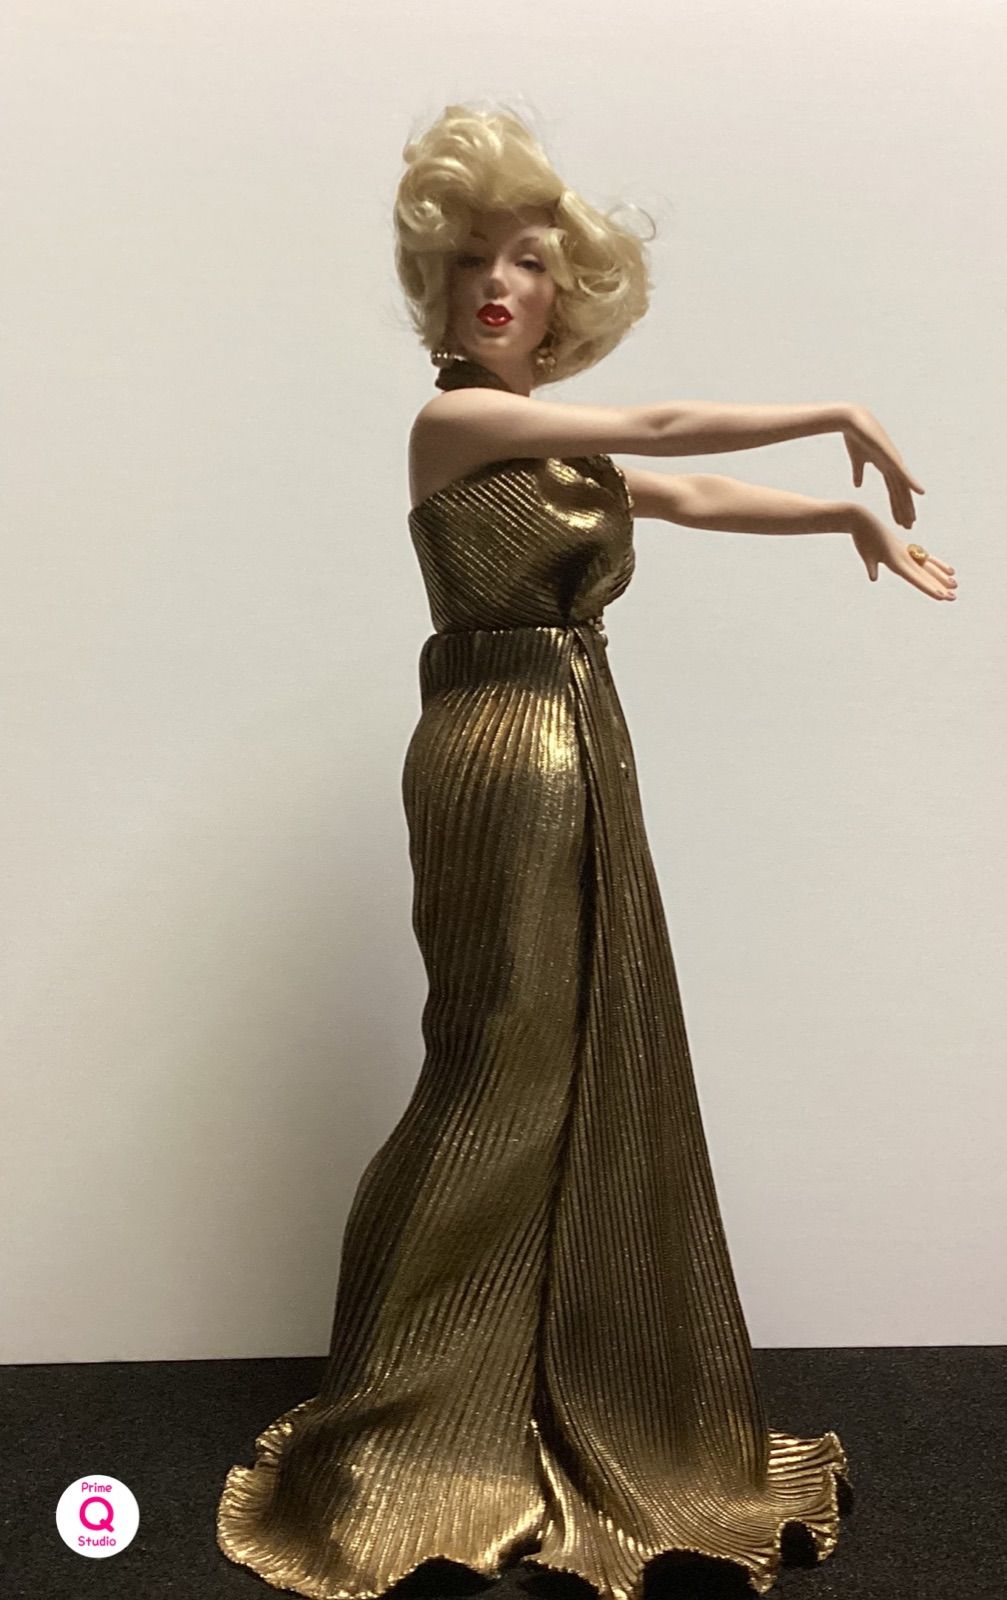 フランクリンミント社製 マリリンモンローフィギア - おもちゃ/人形